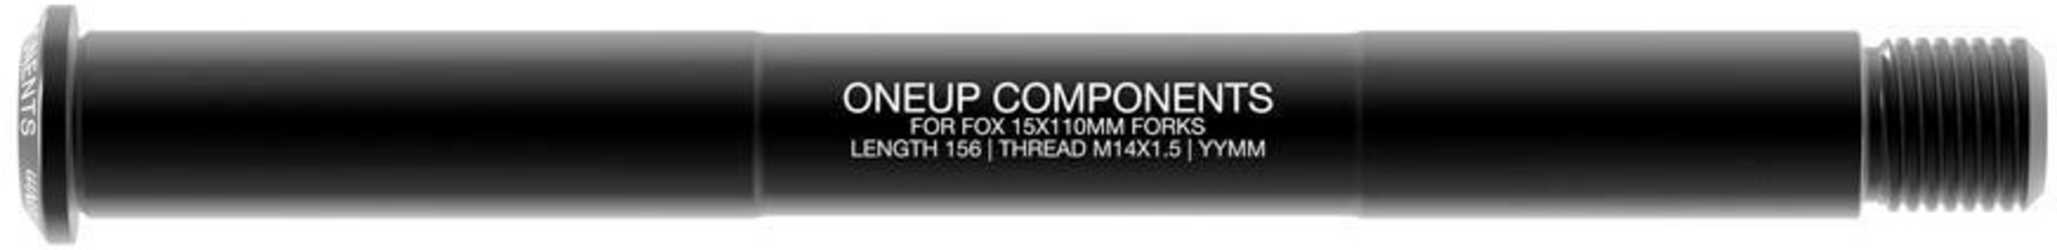 Stickaxel OneUp Fox 15 x 110 mm Boost fram svart från OneUp